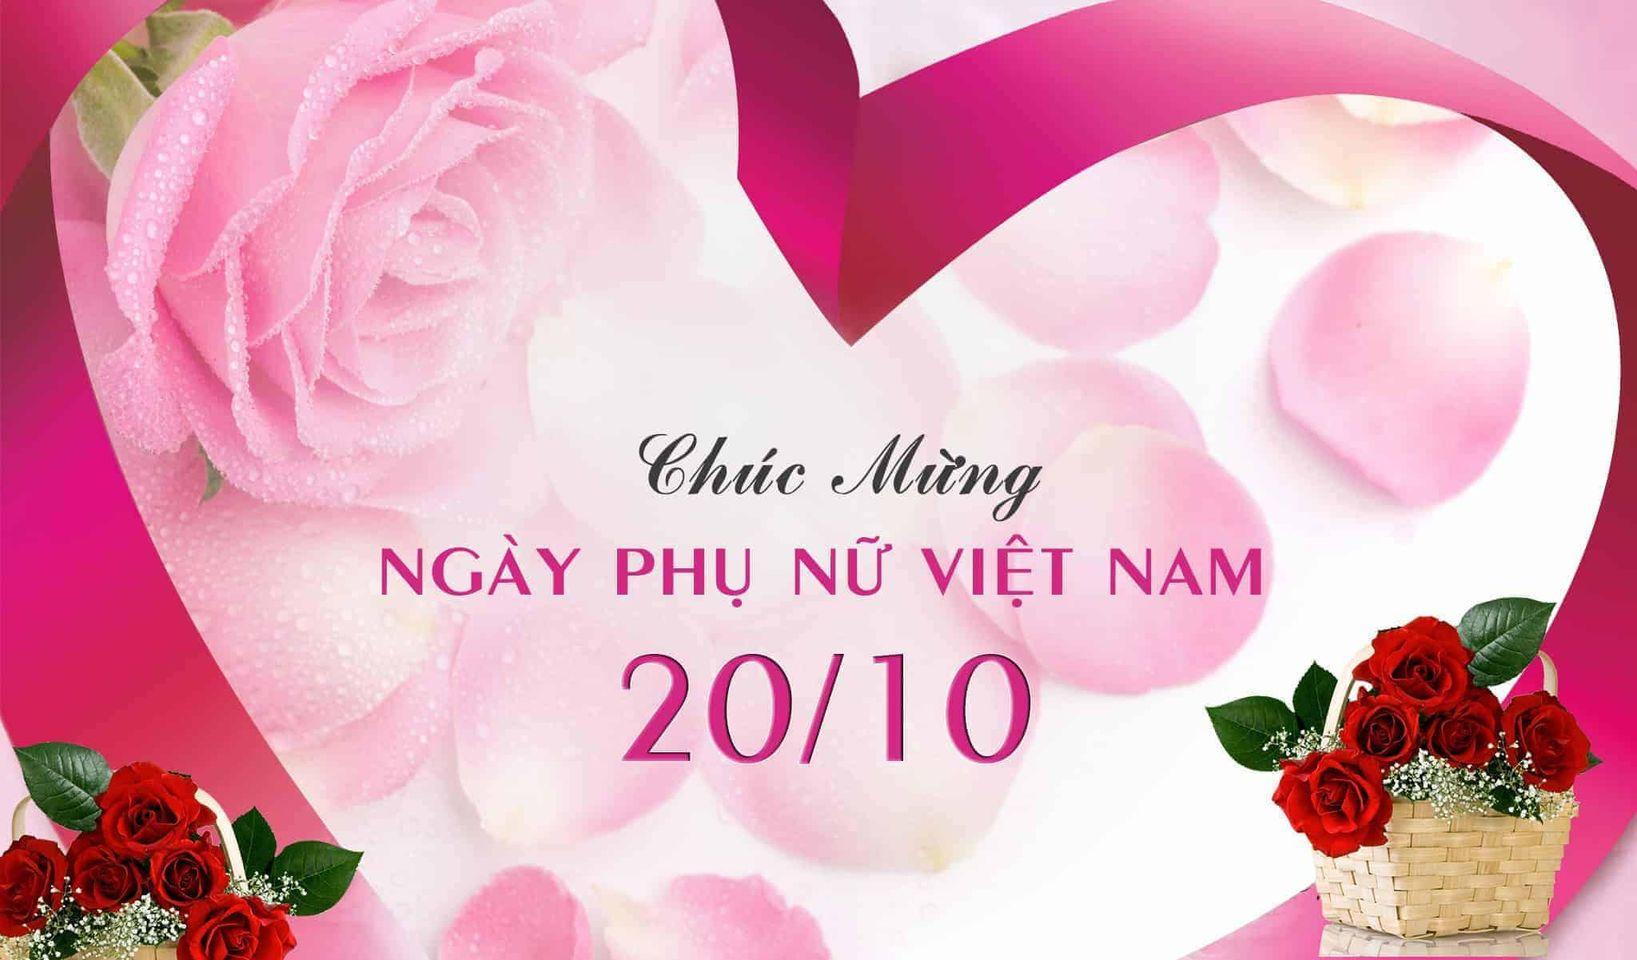 Nguồn gốc và ý nghĩa của ngày hội Phụ nữ Việt Nam 20/10 là những câu chuyện đầy cảm hứng. Hãy cùng tìm hiểu và khám phá những bí mật thú vị đằng sau sự kiện này.